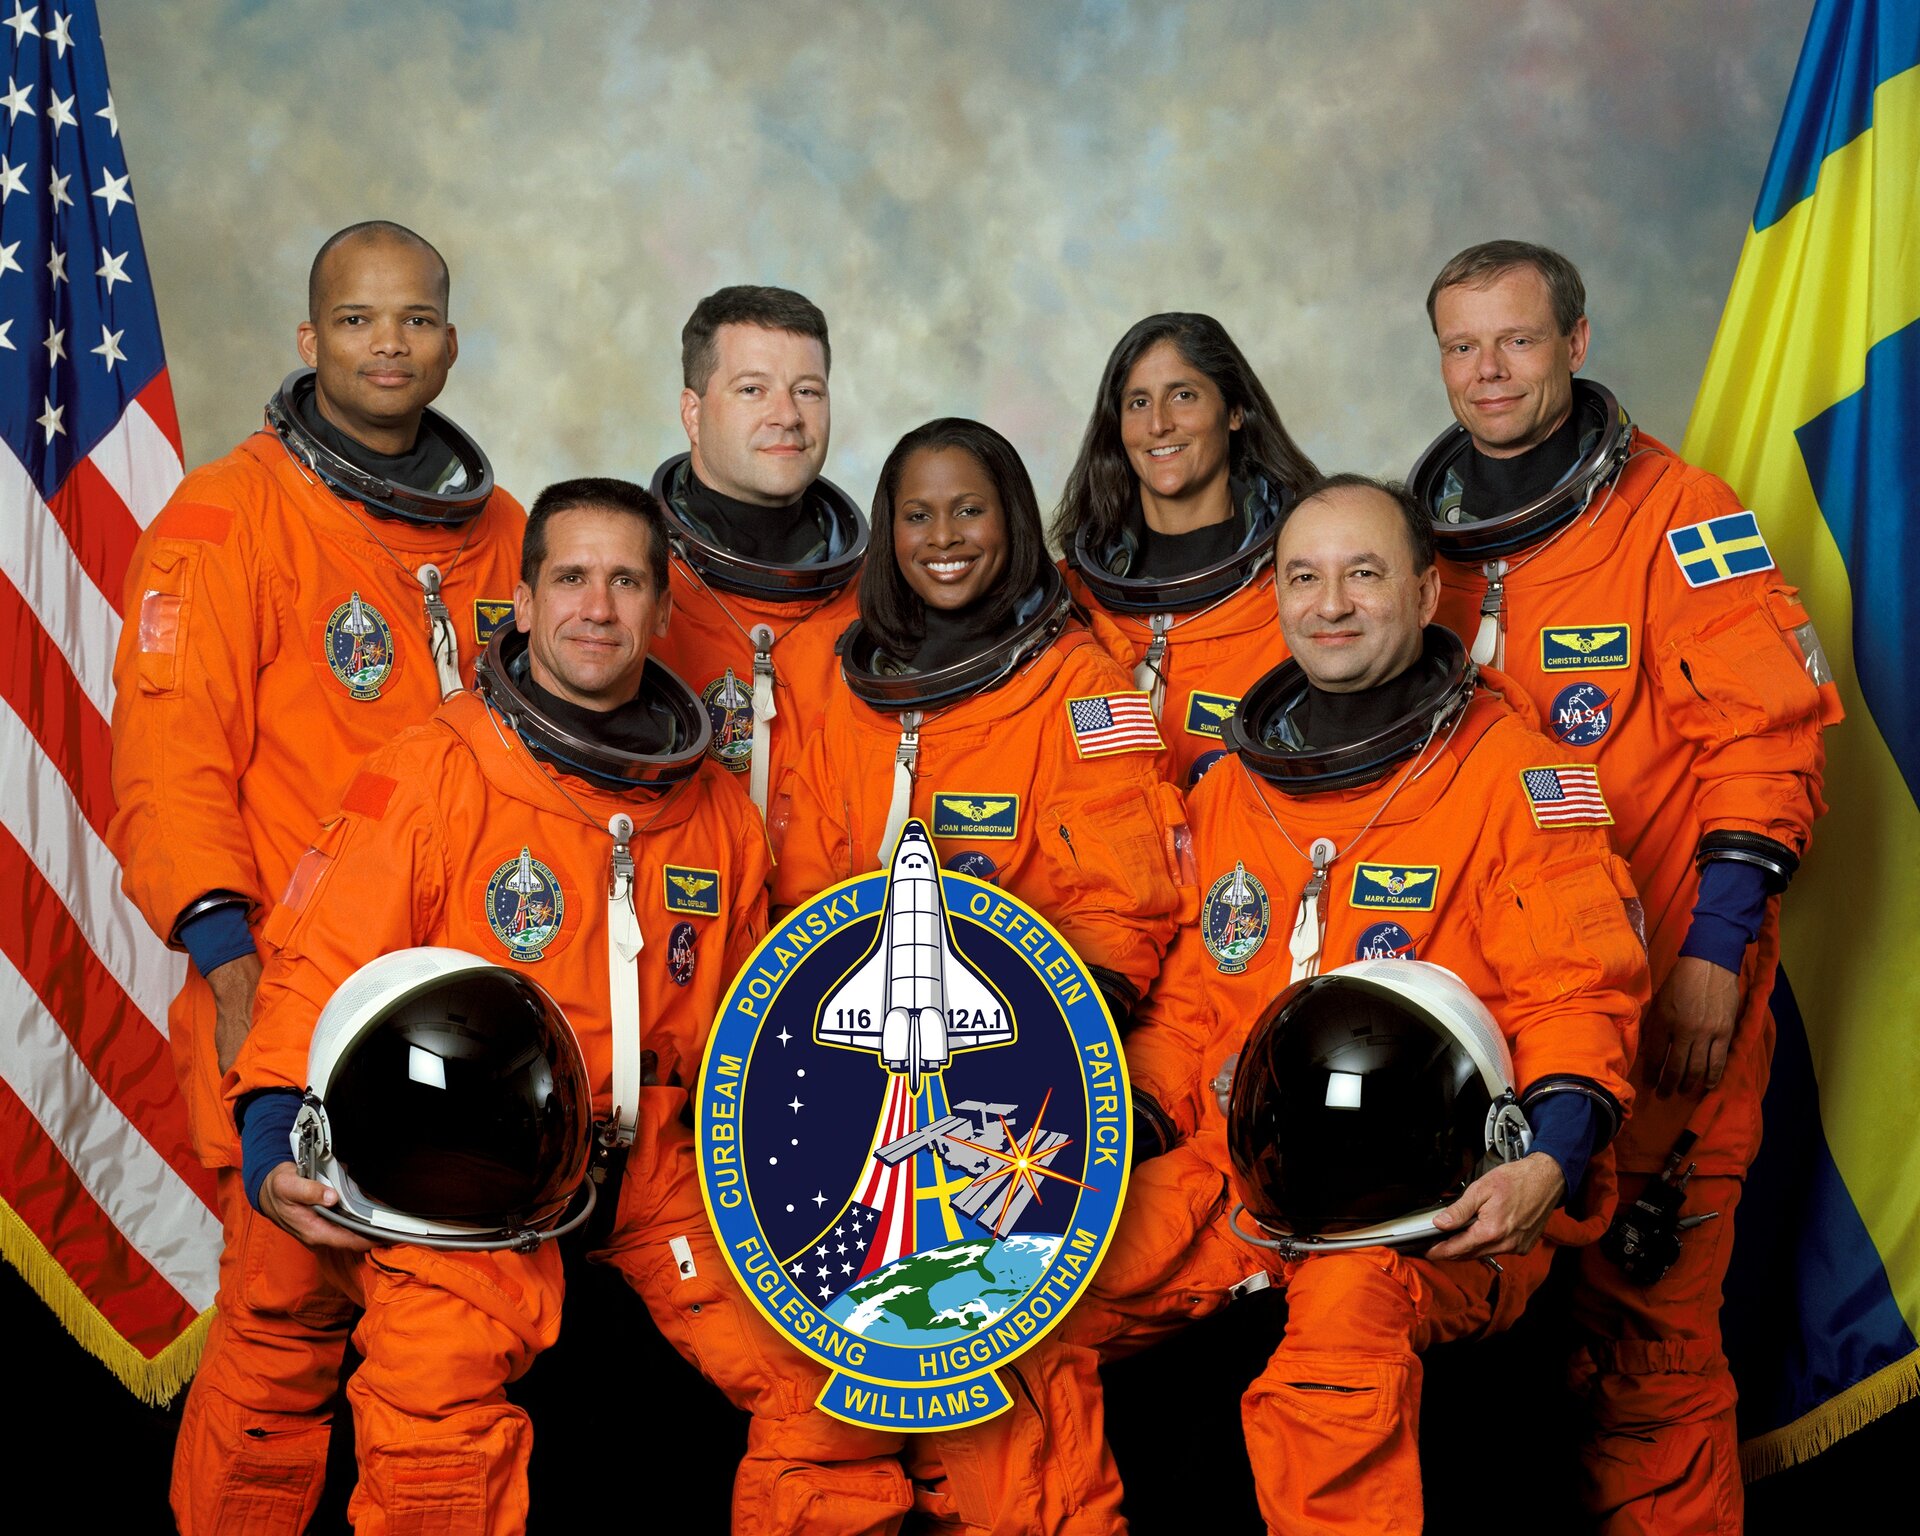 Den här gången är det inte bara Christer Fuglesang som hälsar på. Nu har han även med sig sina kollegor från uppdraget STS-116.